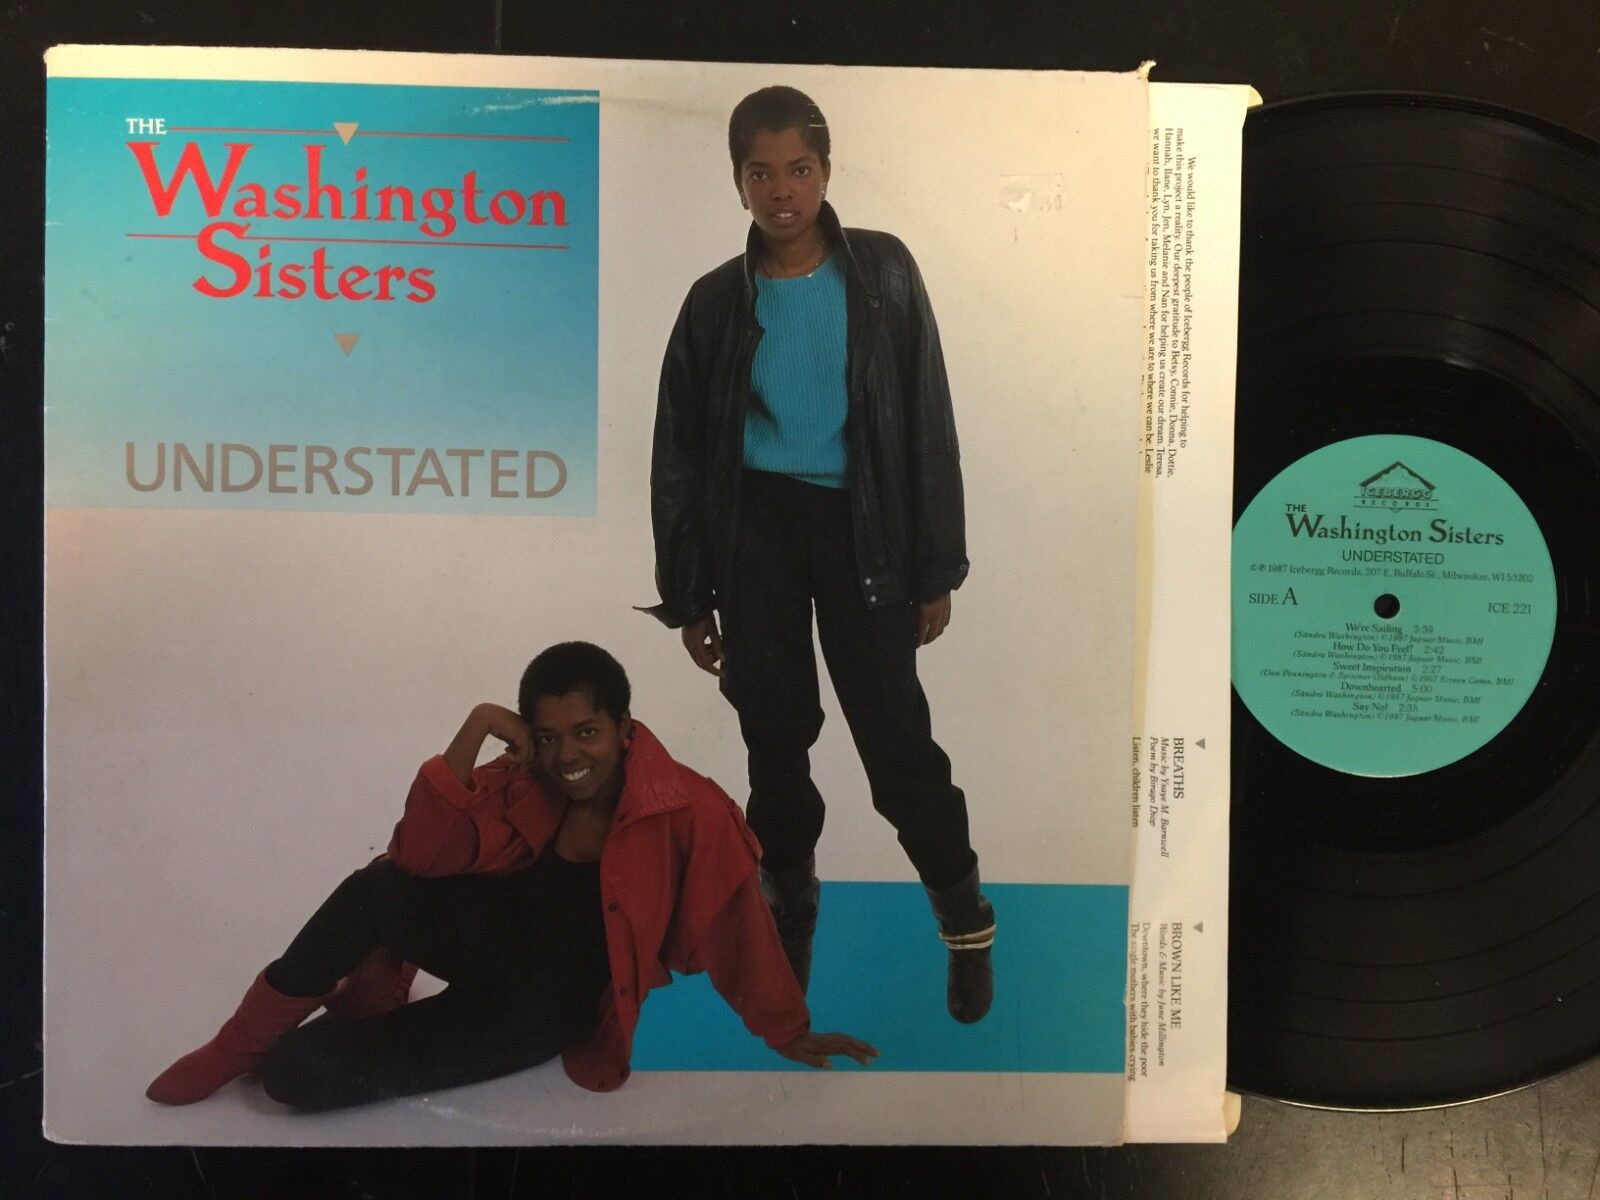 THE WASHINGTON SISTERS UNDERSTATED LP OG 1987 SOUL/FUNK VG+